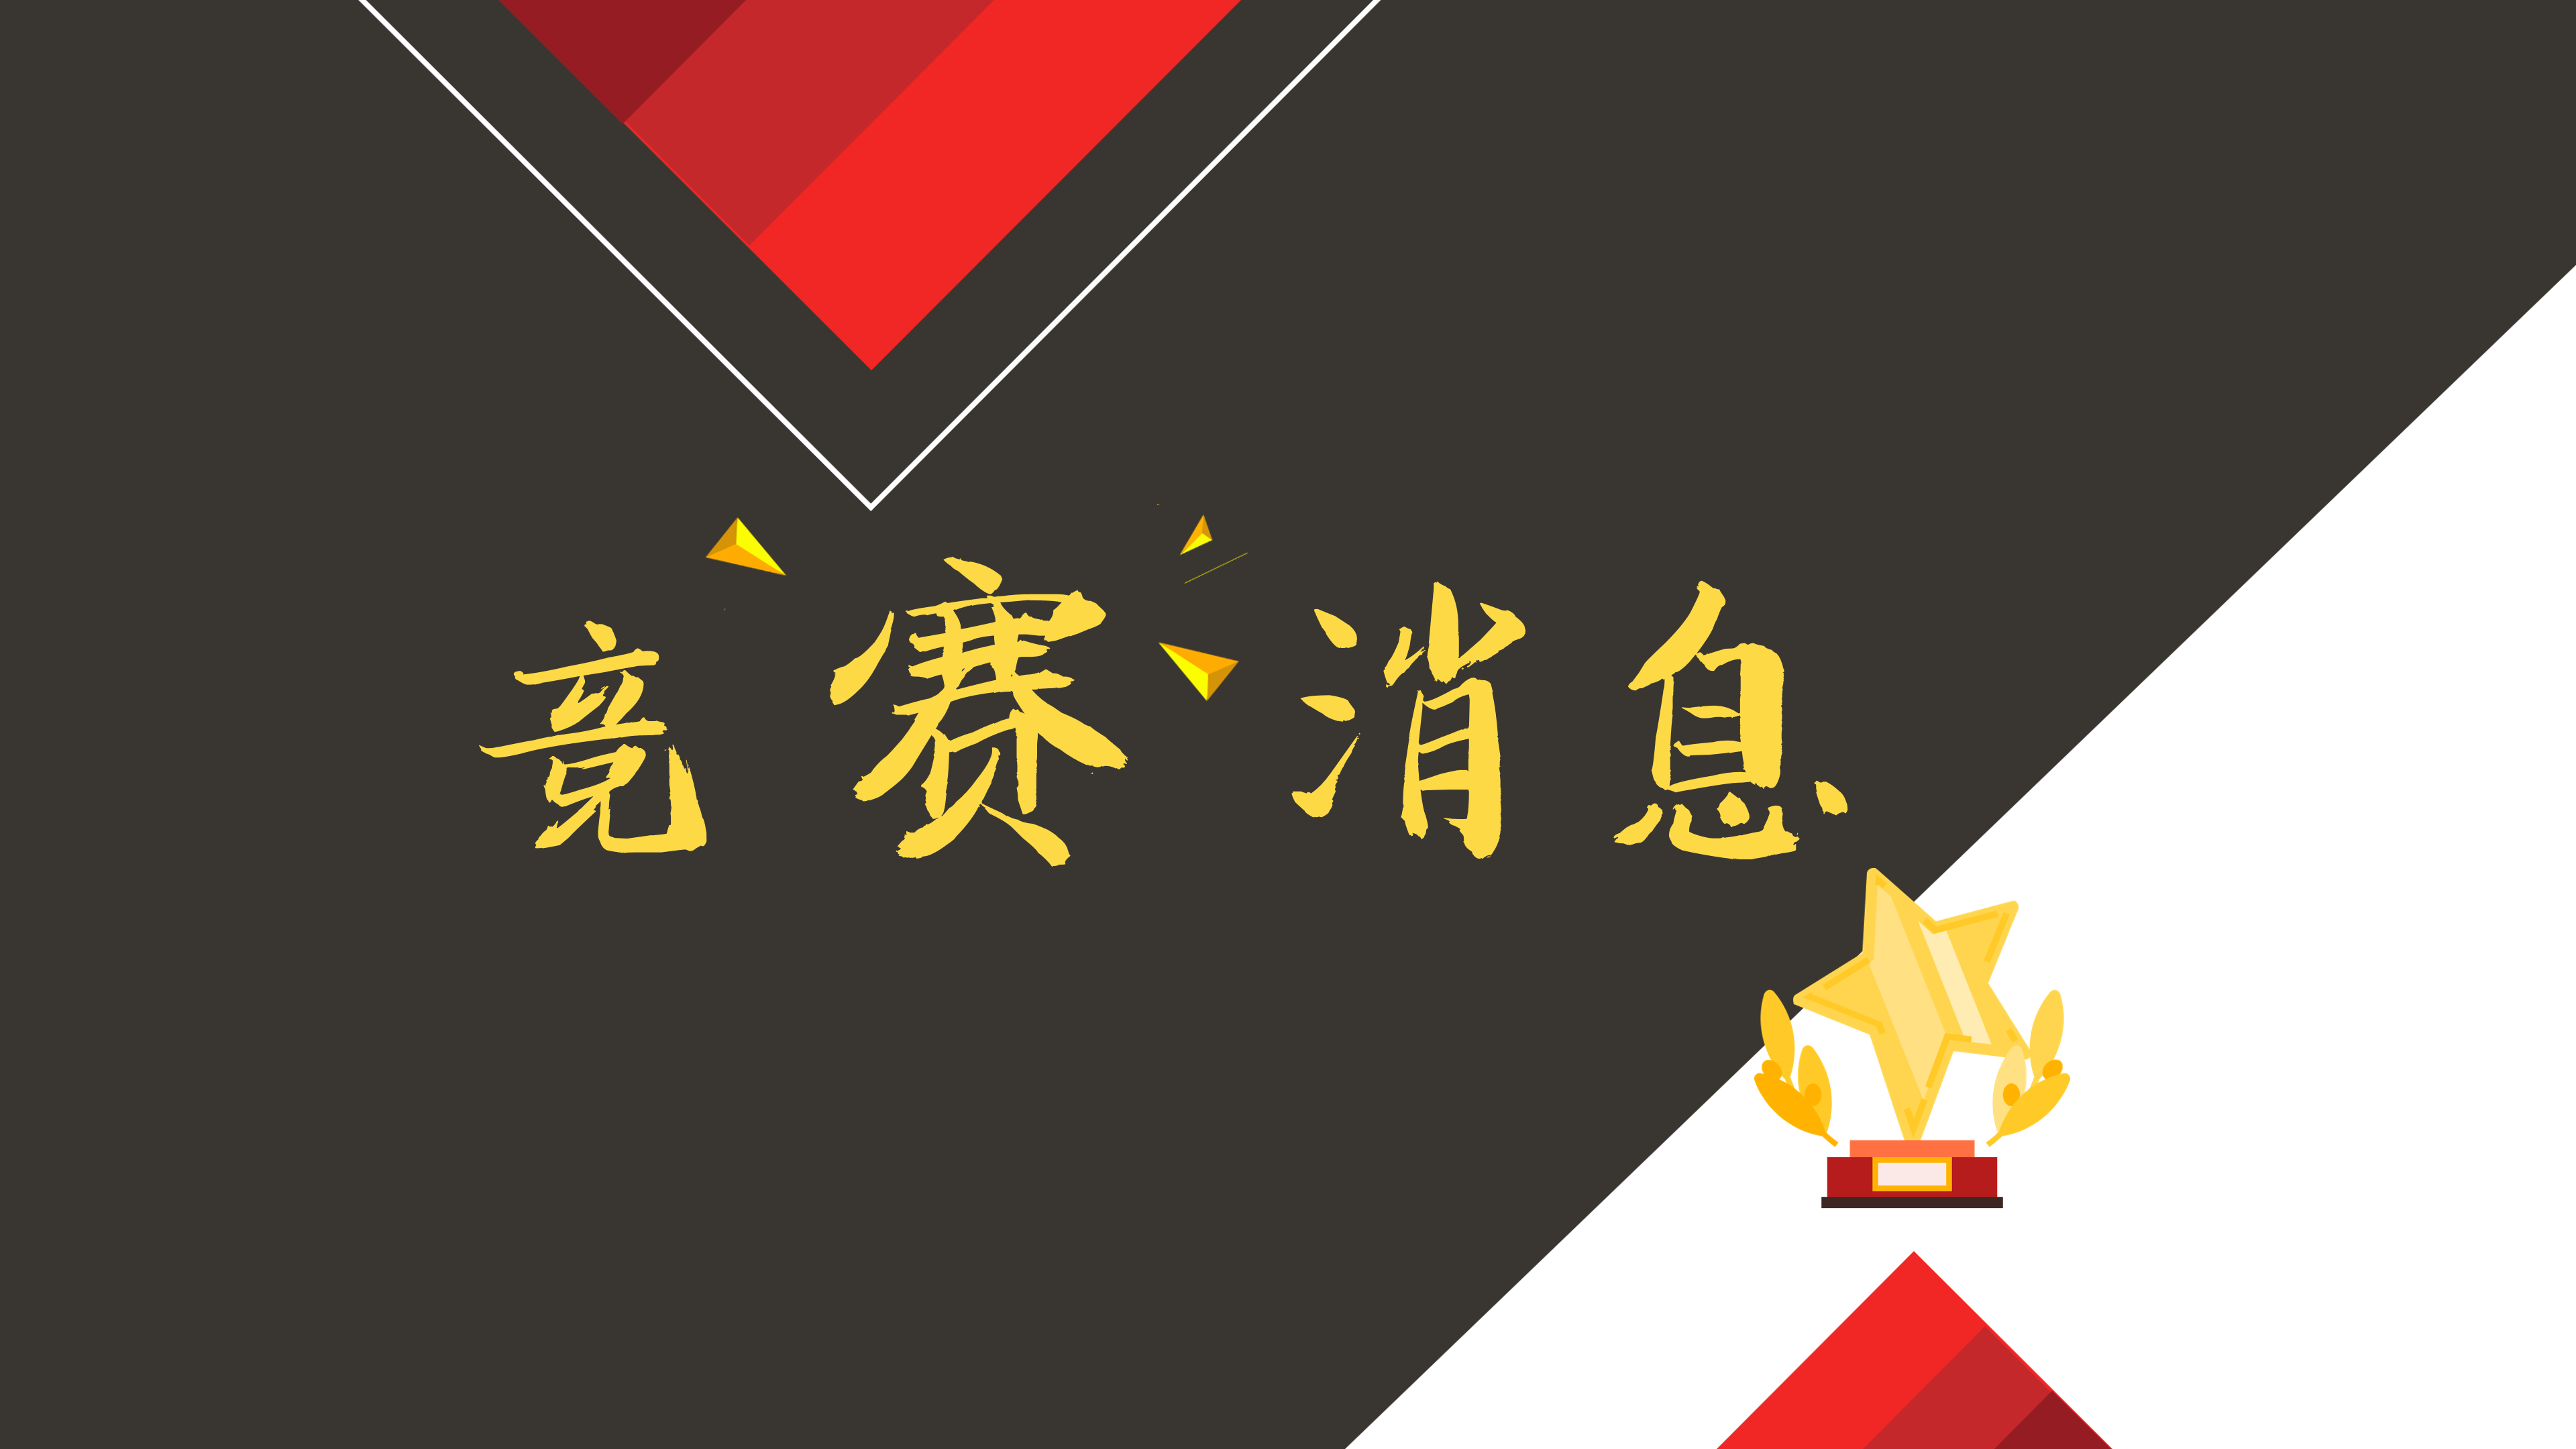 竞赛丨2019 中国青少年英语大会报名赛道